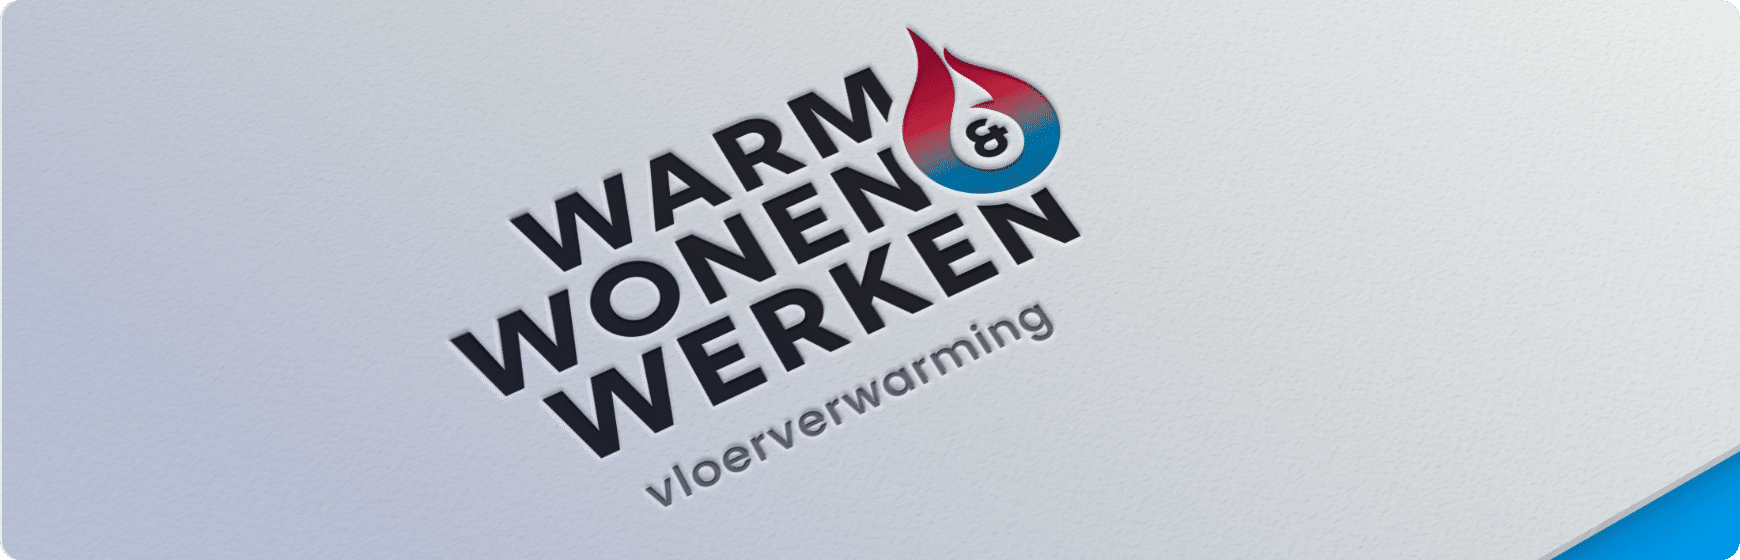 Warm Wonen & Werken